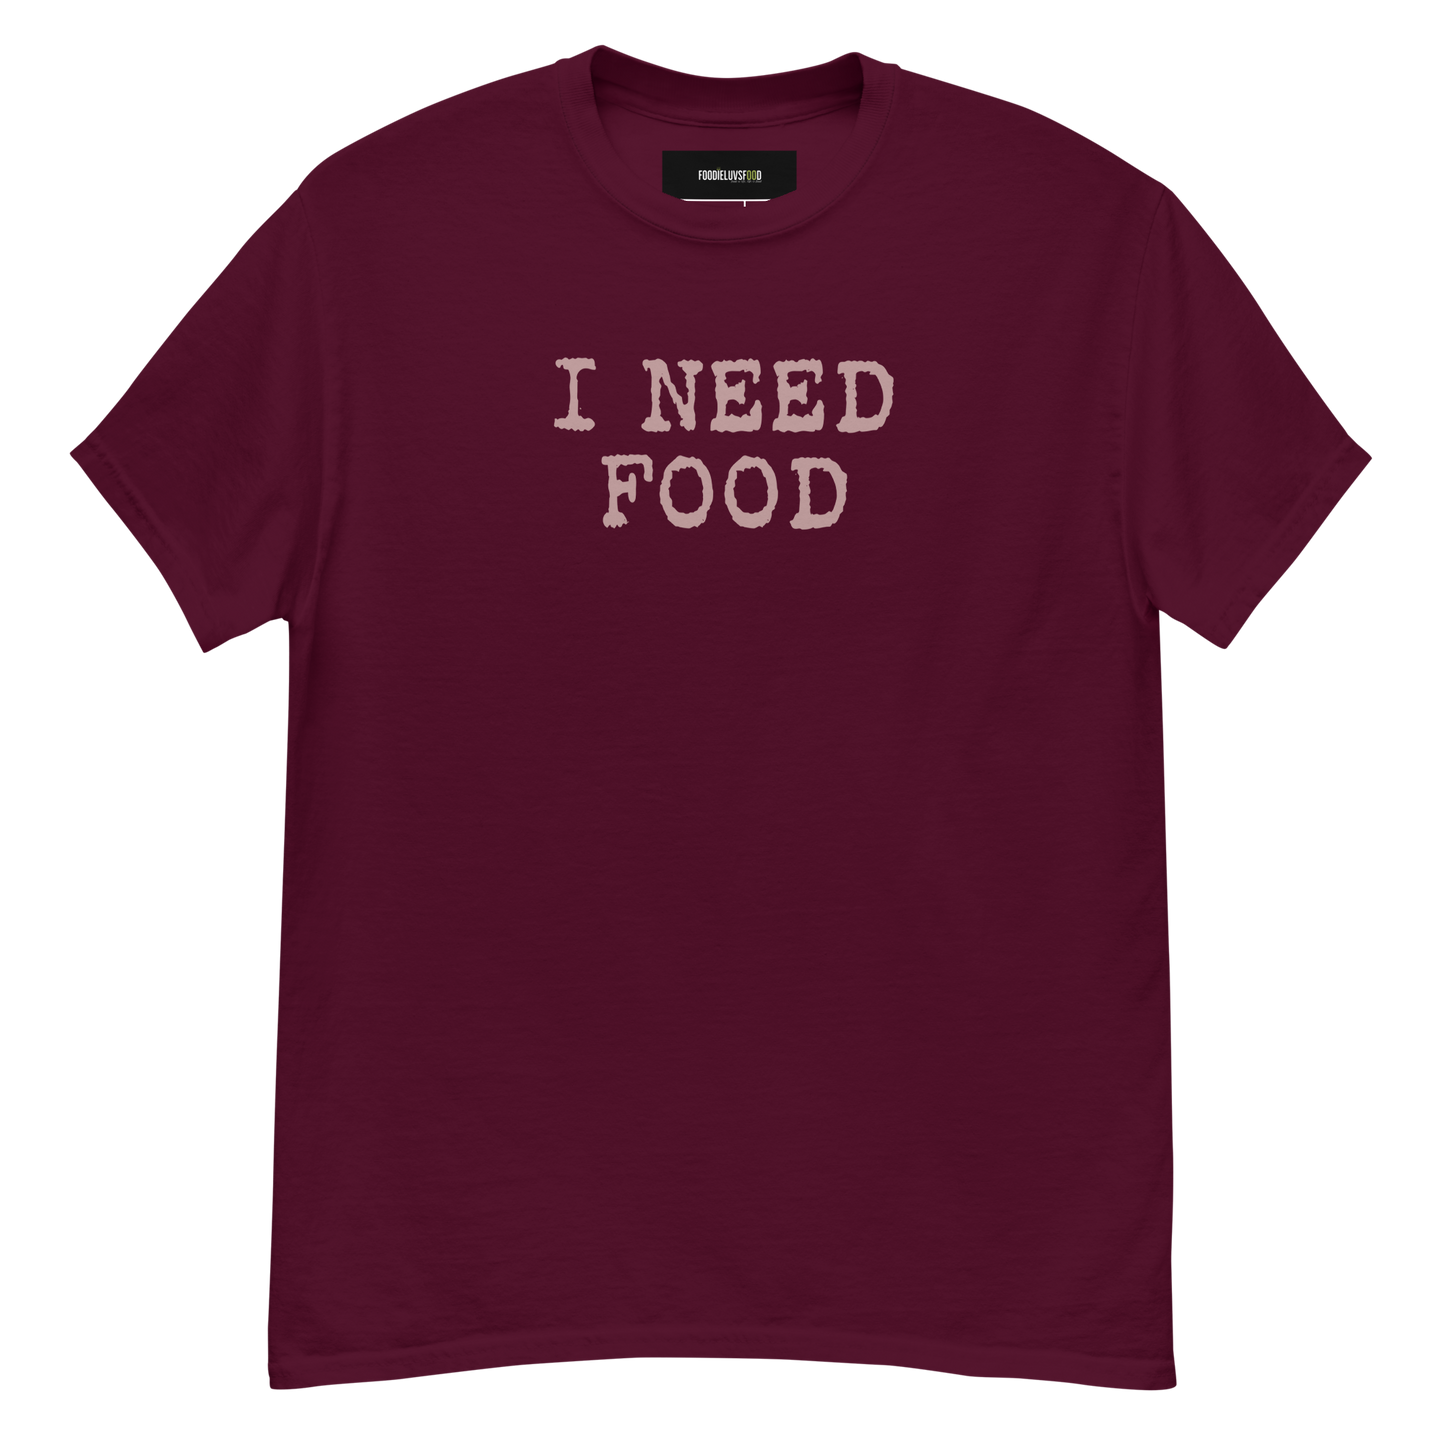 “I Need Food” Unisex Classic Food